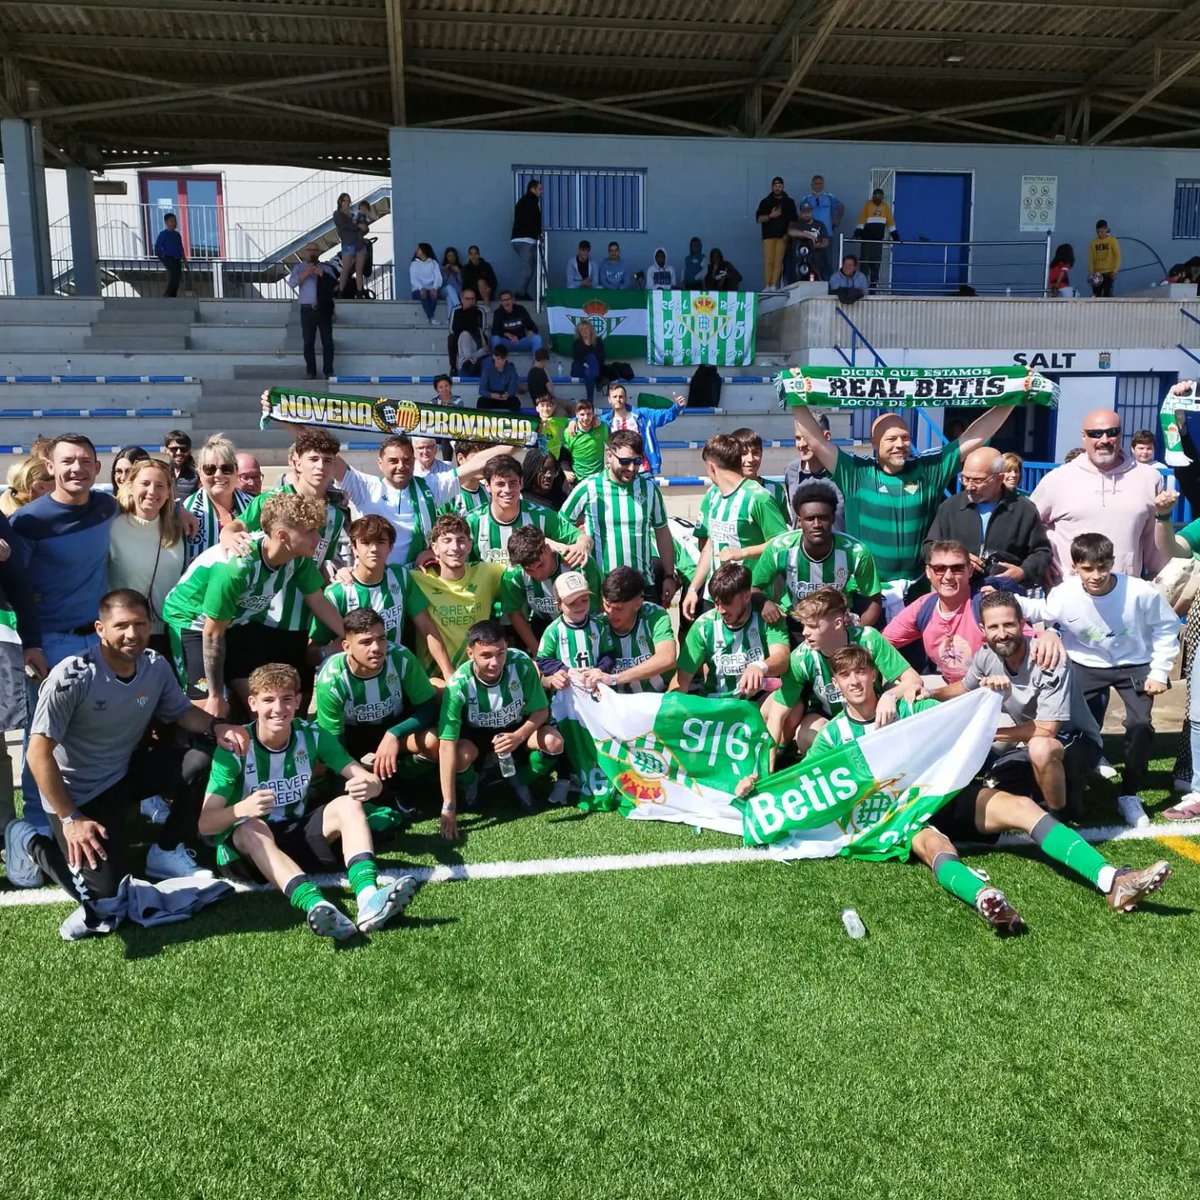 Esta mañana la @novenaprovincia estuvo apoyando al Juvenil del @realbetisbalompie en el Torneo @micfootball disputado en Salt (Girona).
Victoria por 3-0⁸